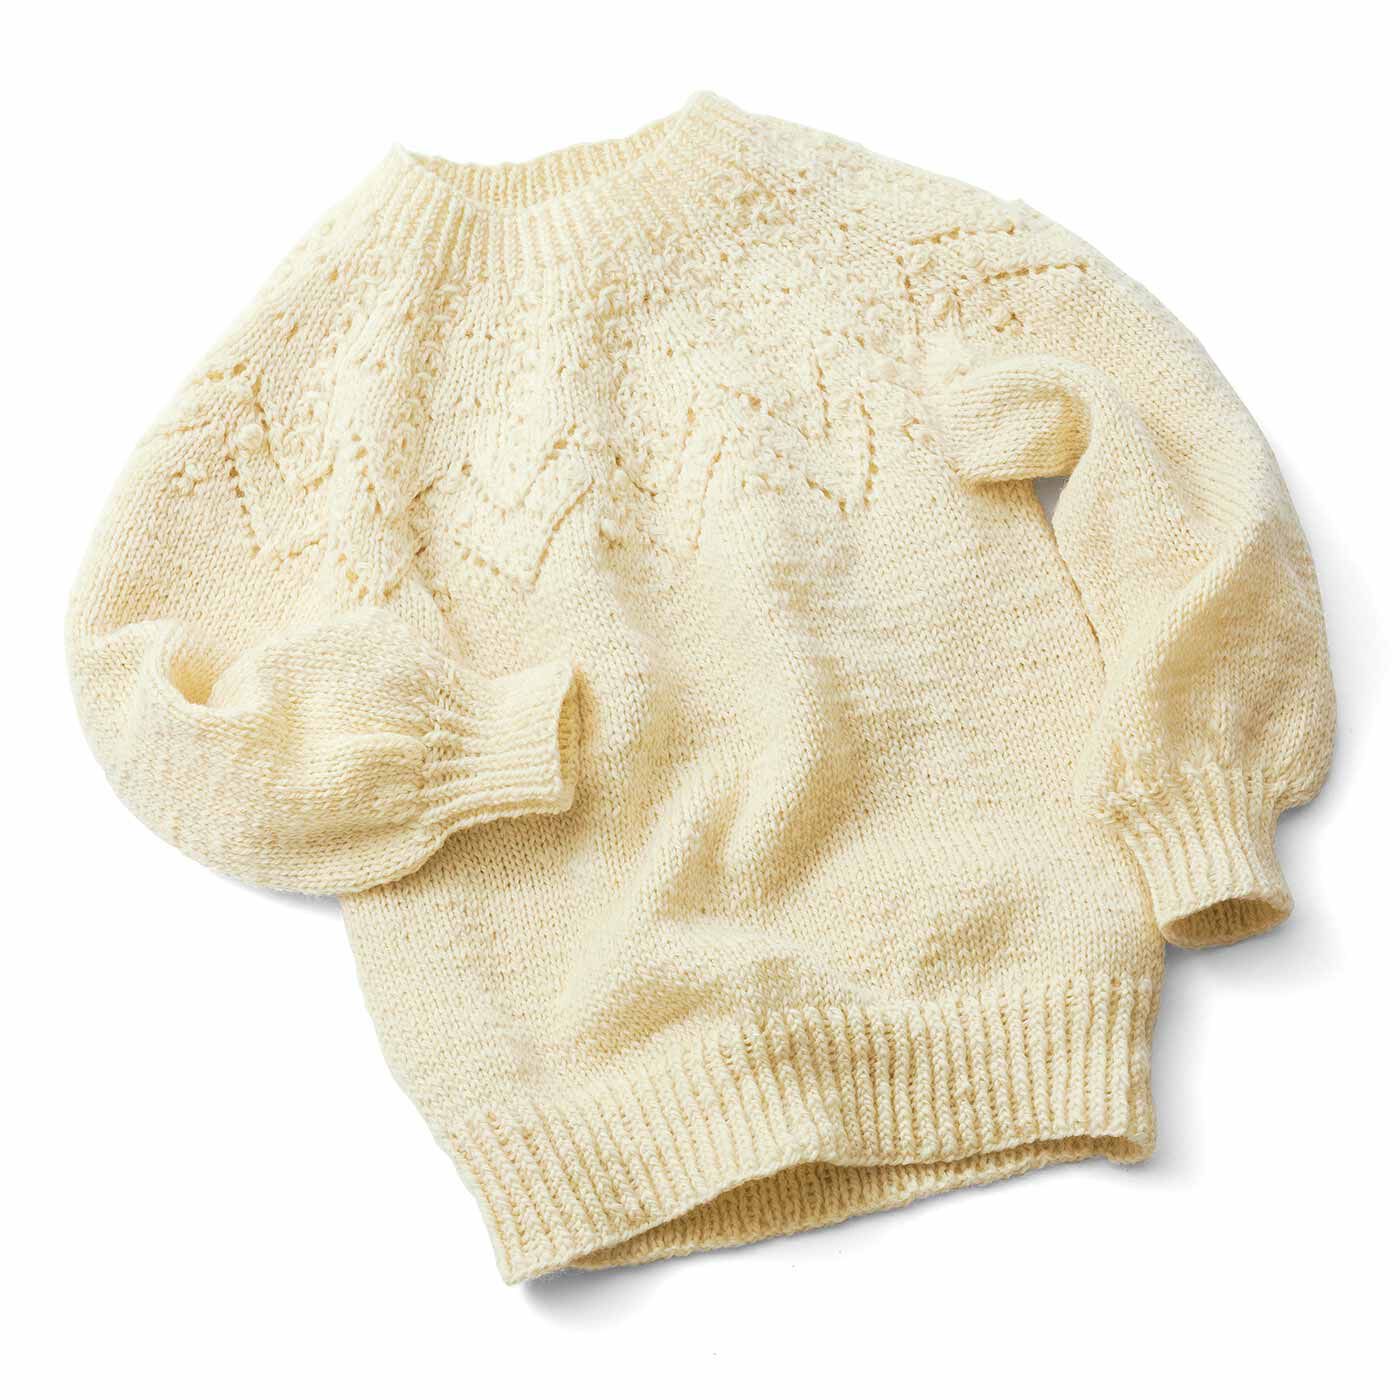 クチュリエ|今こそチャレンジ 輪針で編める 手編みのセーター〈ミスティーローズ〉|●色は一例です。